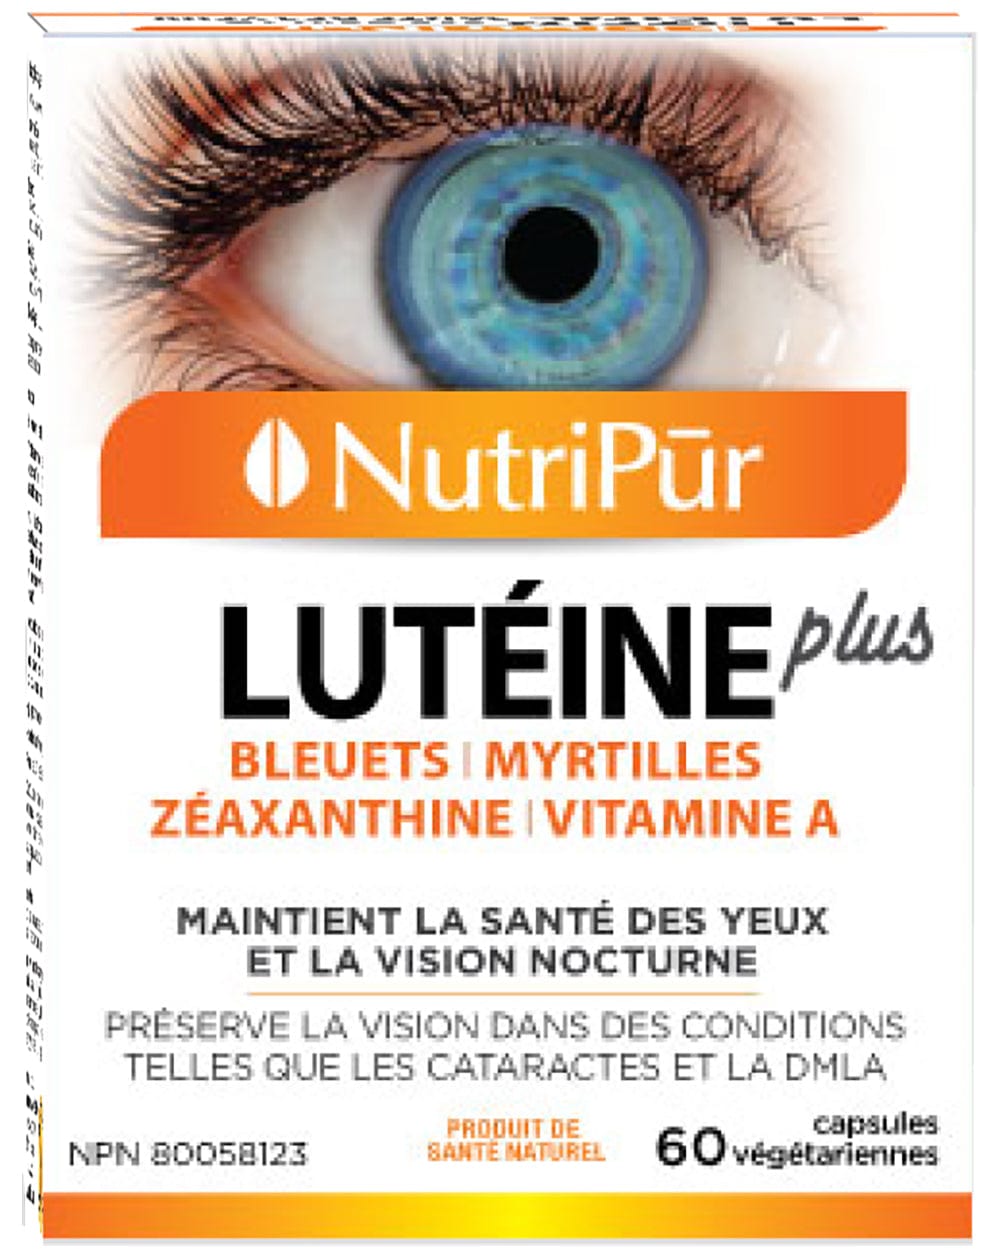 NUTRIPUR Suppléments Lutéine plus (maintient santé yeux et vision nocturne) 60vcaps